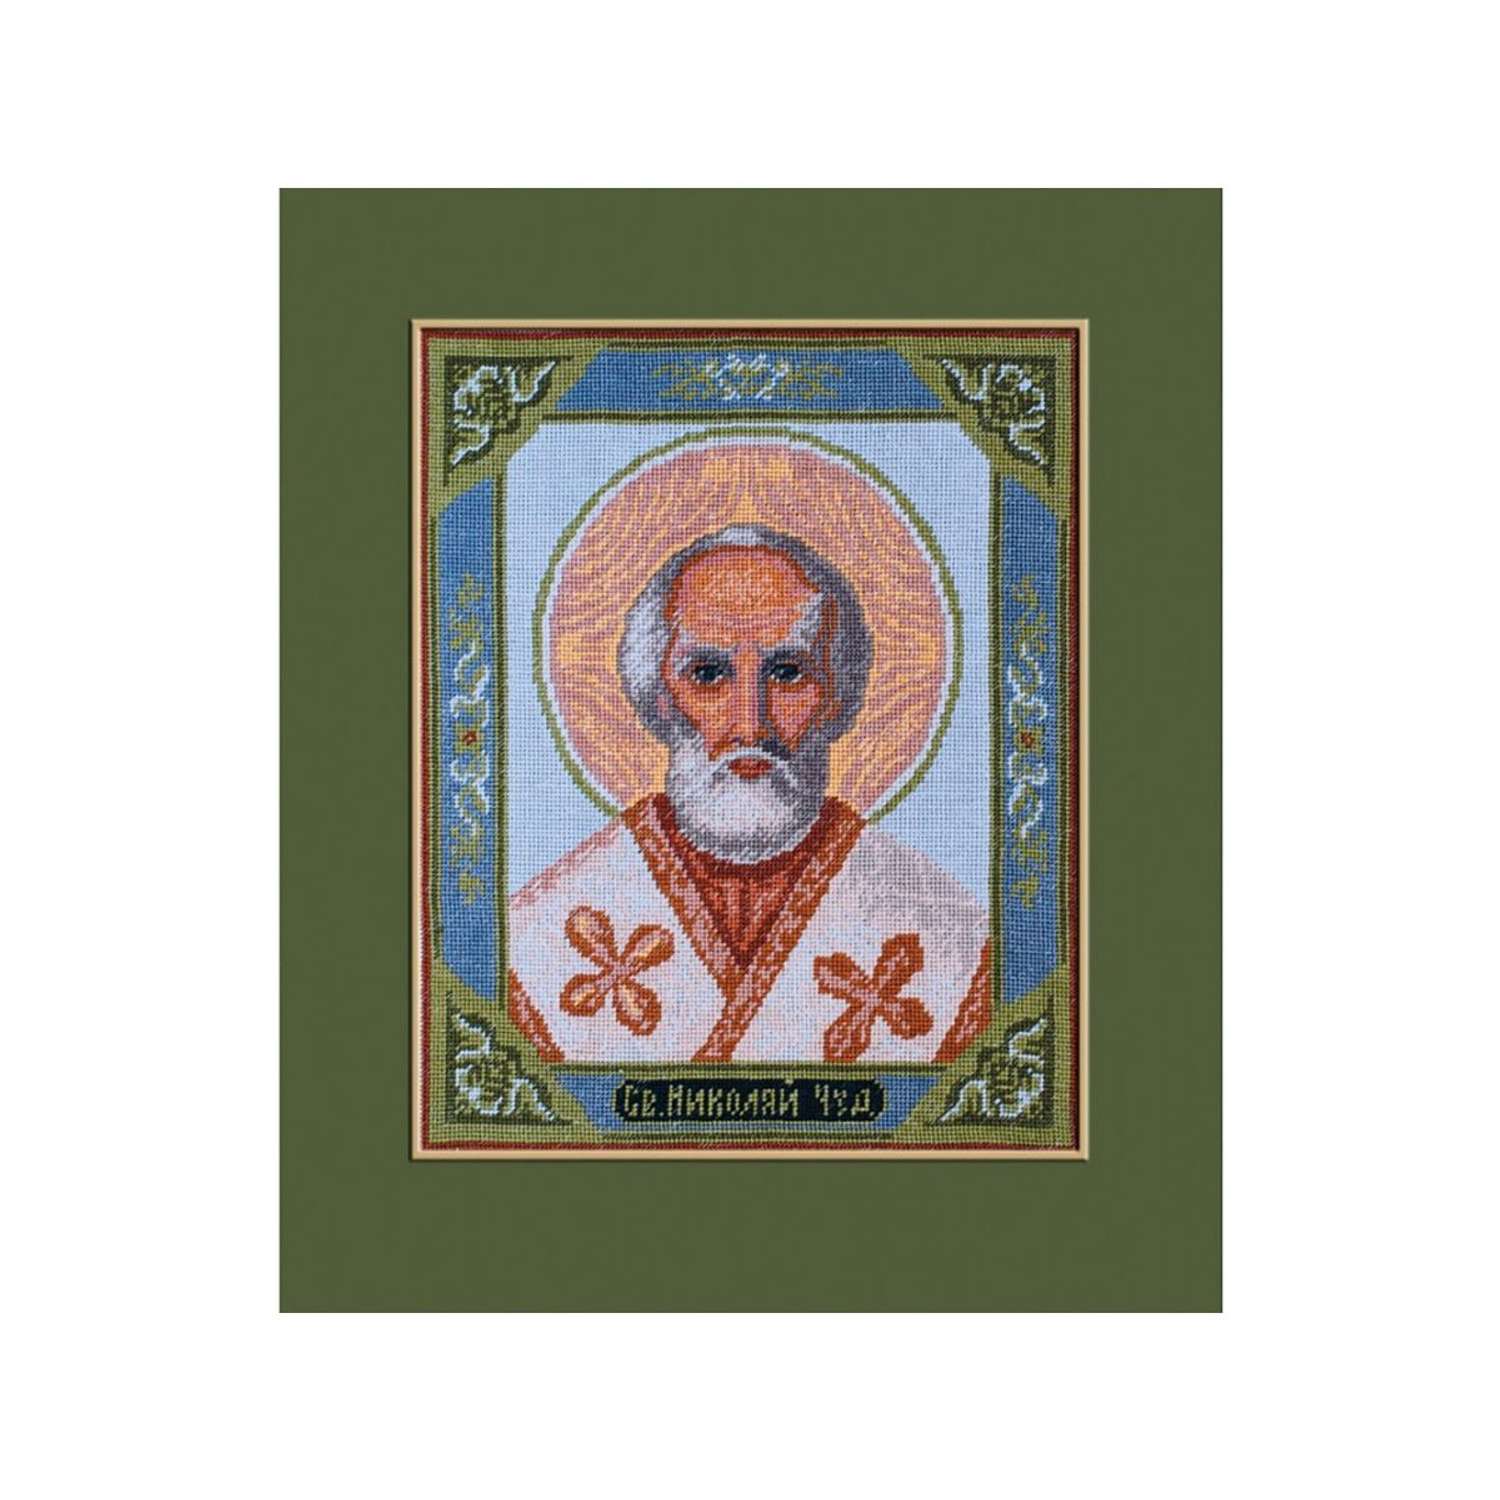 Набор для вышивания РС Студия крестом иконы 130 Николай - чудотворец 28х23см - фото 1